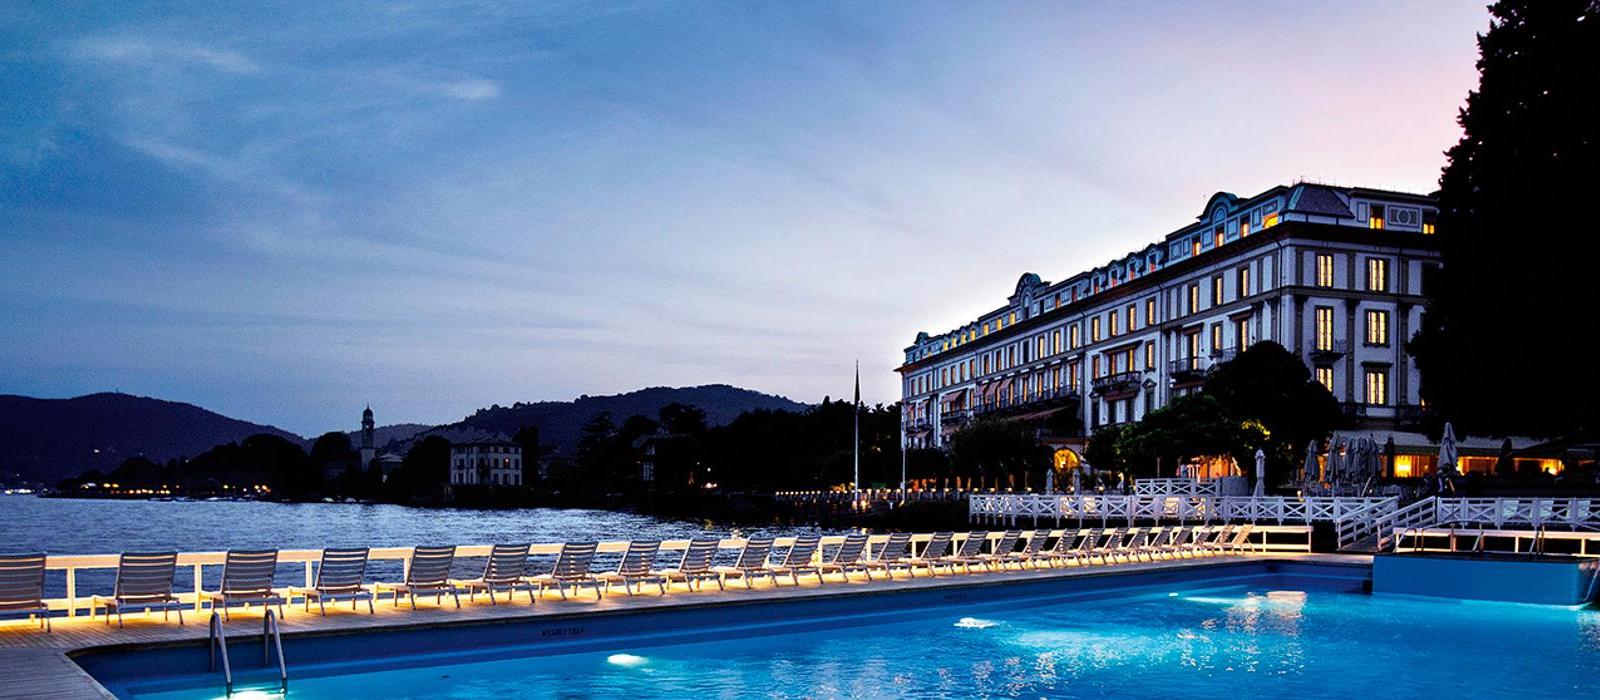 埃斯特庄园酒店(Villa d'Este) 图片  www.lhw.cn